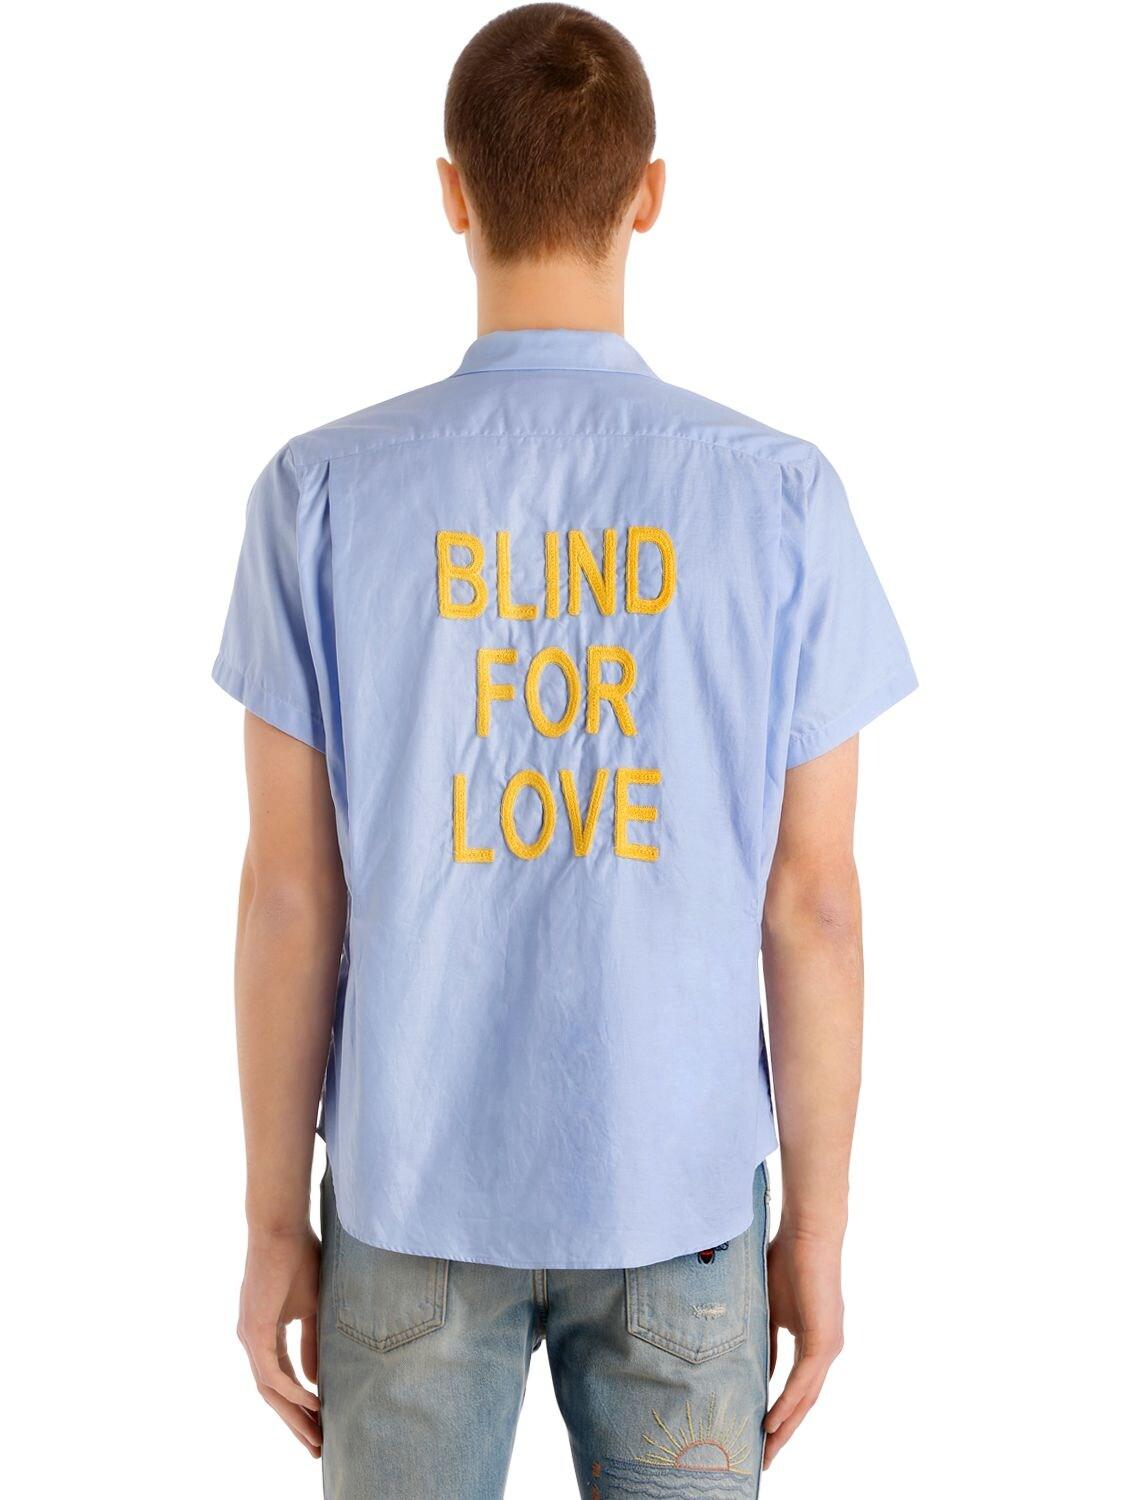 blind for love shirt